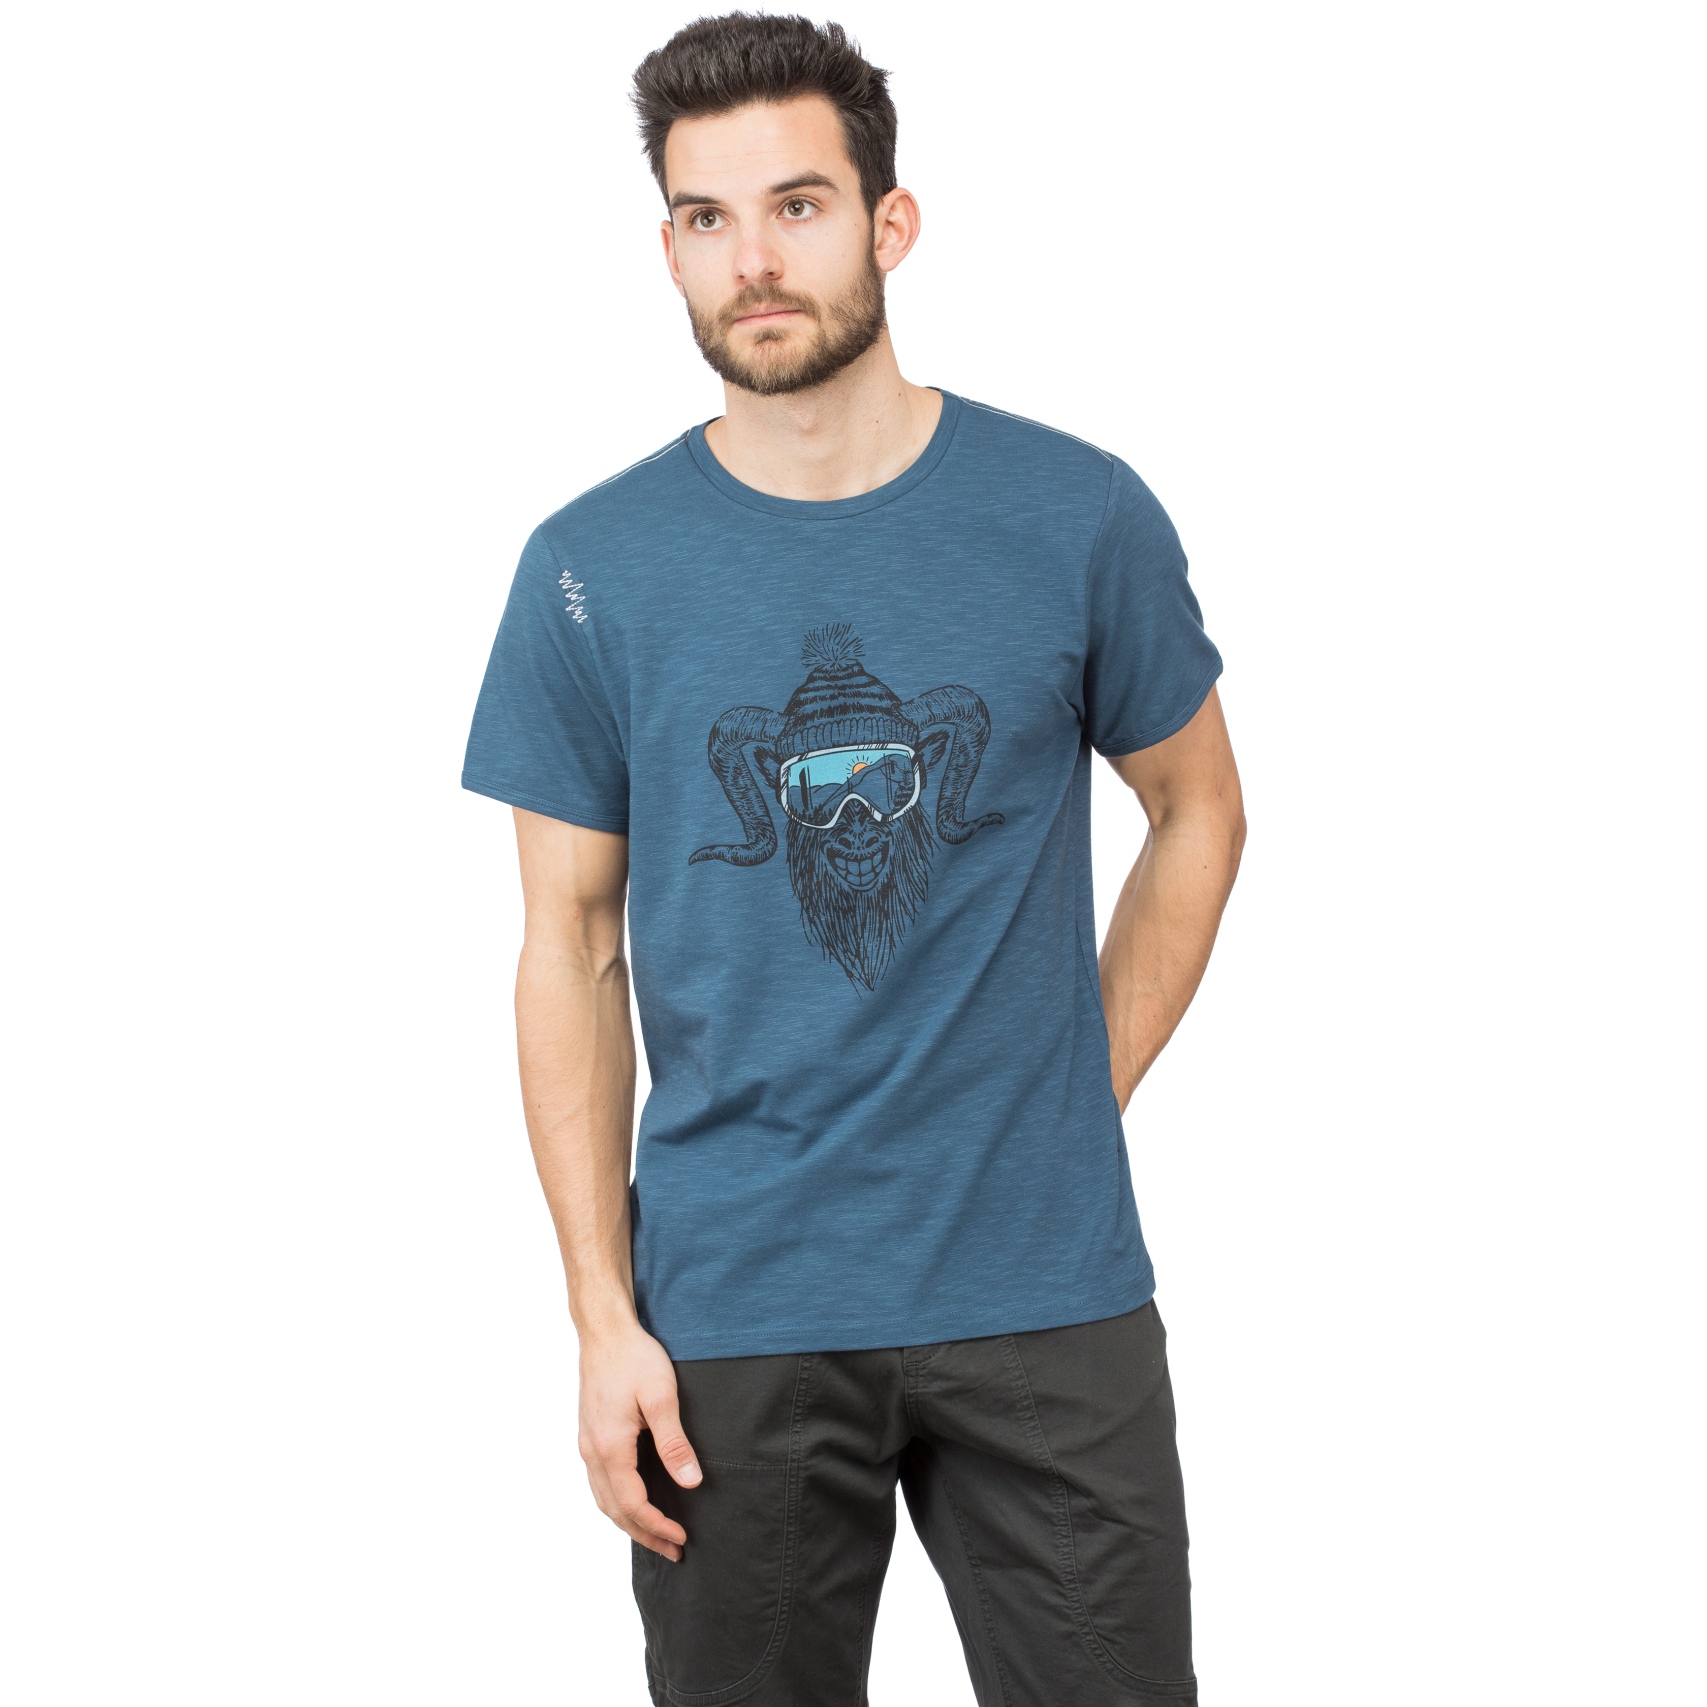 Produktbild von Chillaz Rock Hero Winter T-Shirt - dark blue